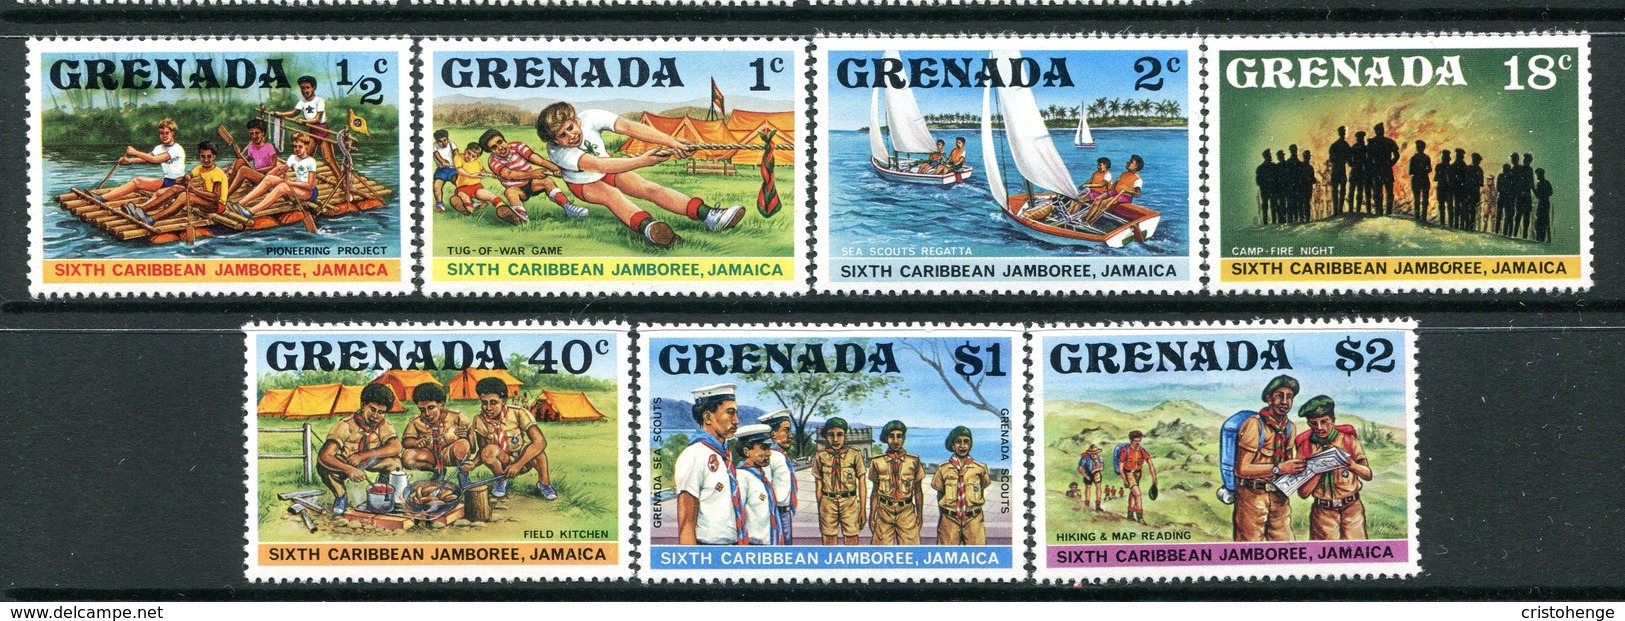 Grenada 1977 Caribbean Scout Jamboree, Jamaica Set MNH (SG 878-884) - Grenada (1974-...)